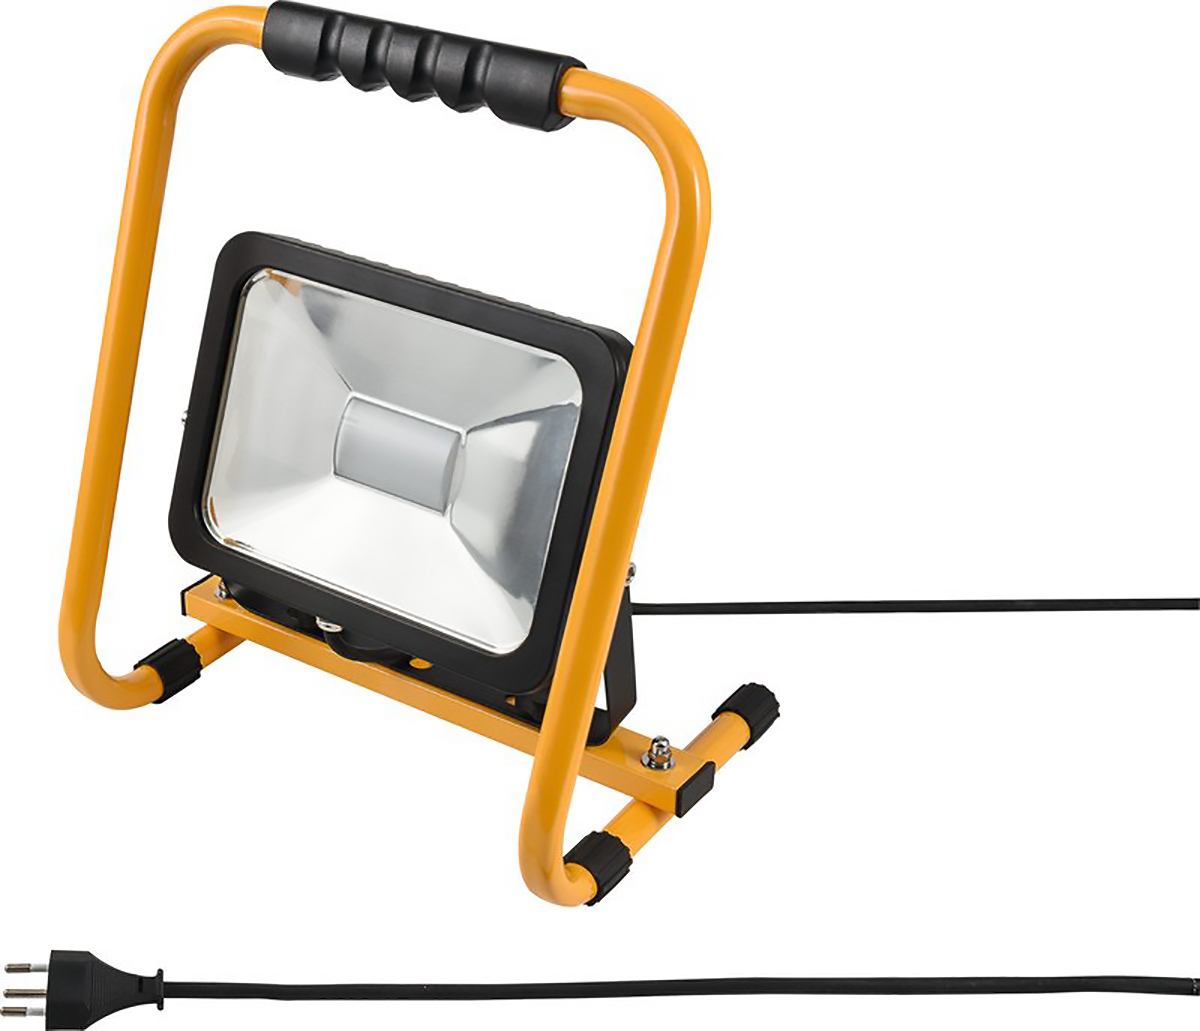 Worklight LED Projecteur 20W jaune/noir Pic1